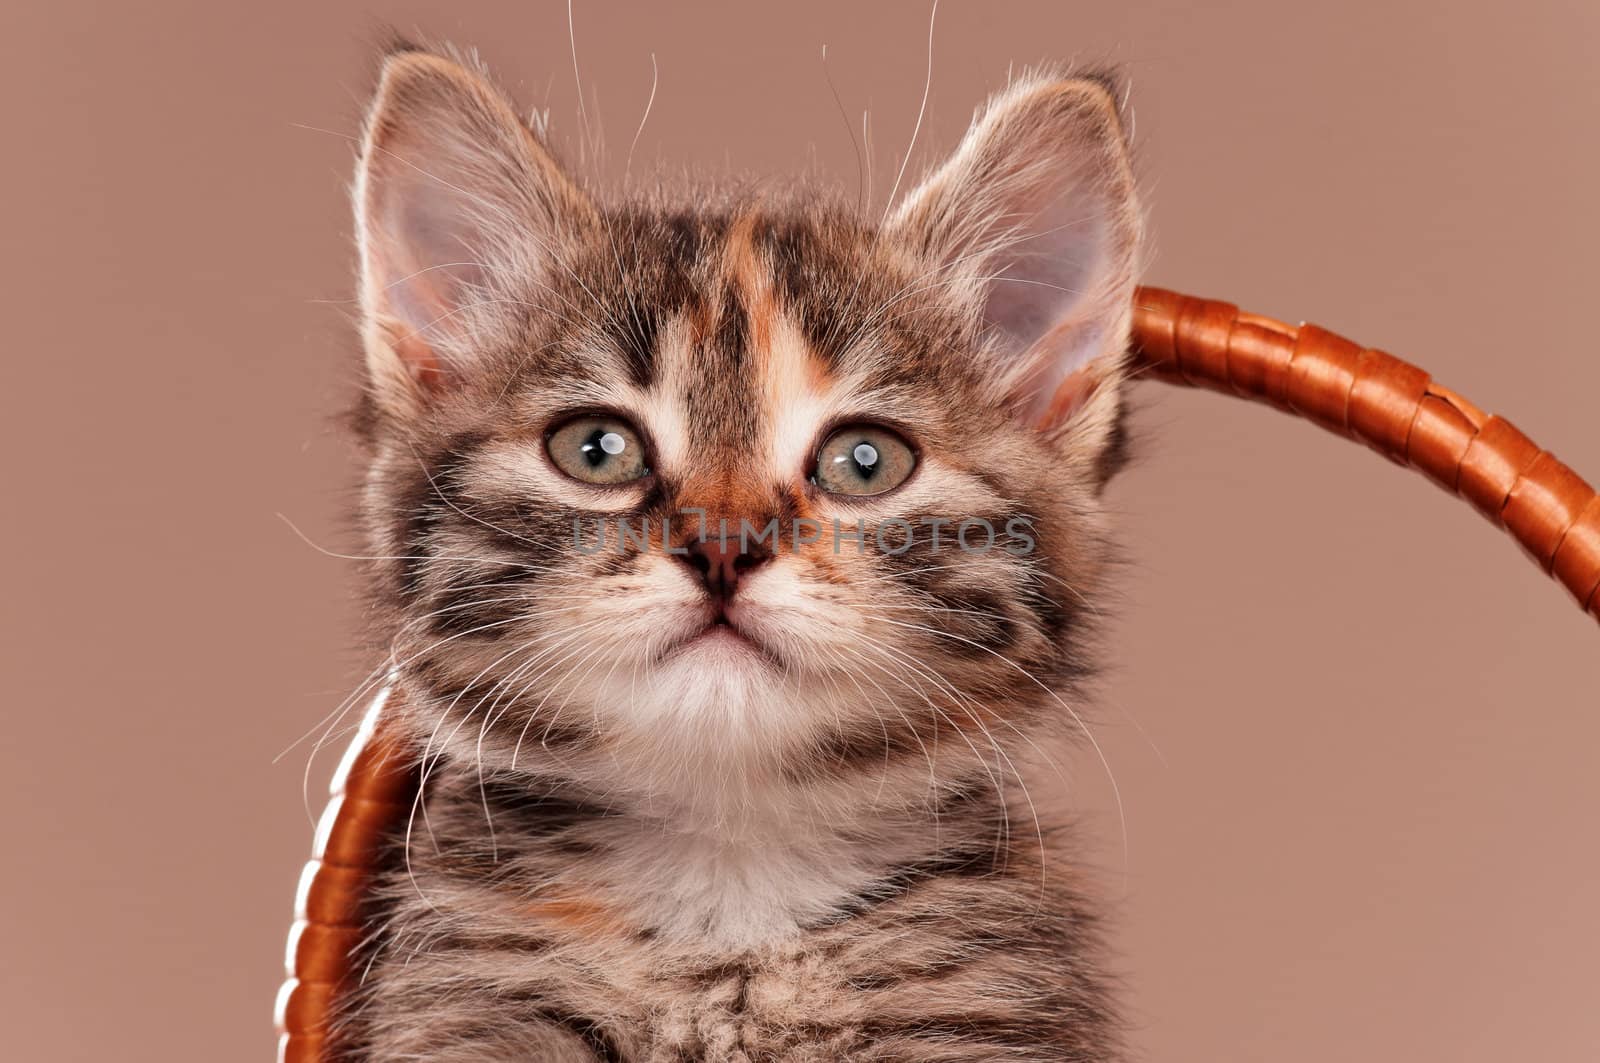 Cute little kitten in a wicker basket on grey background